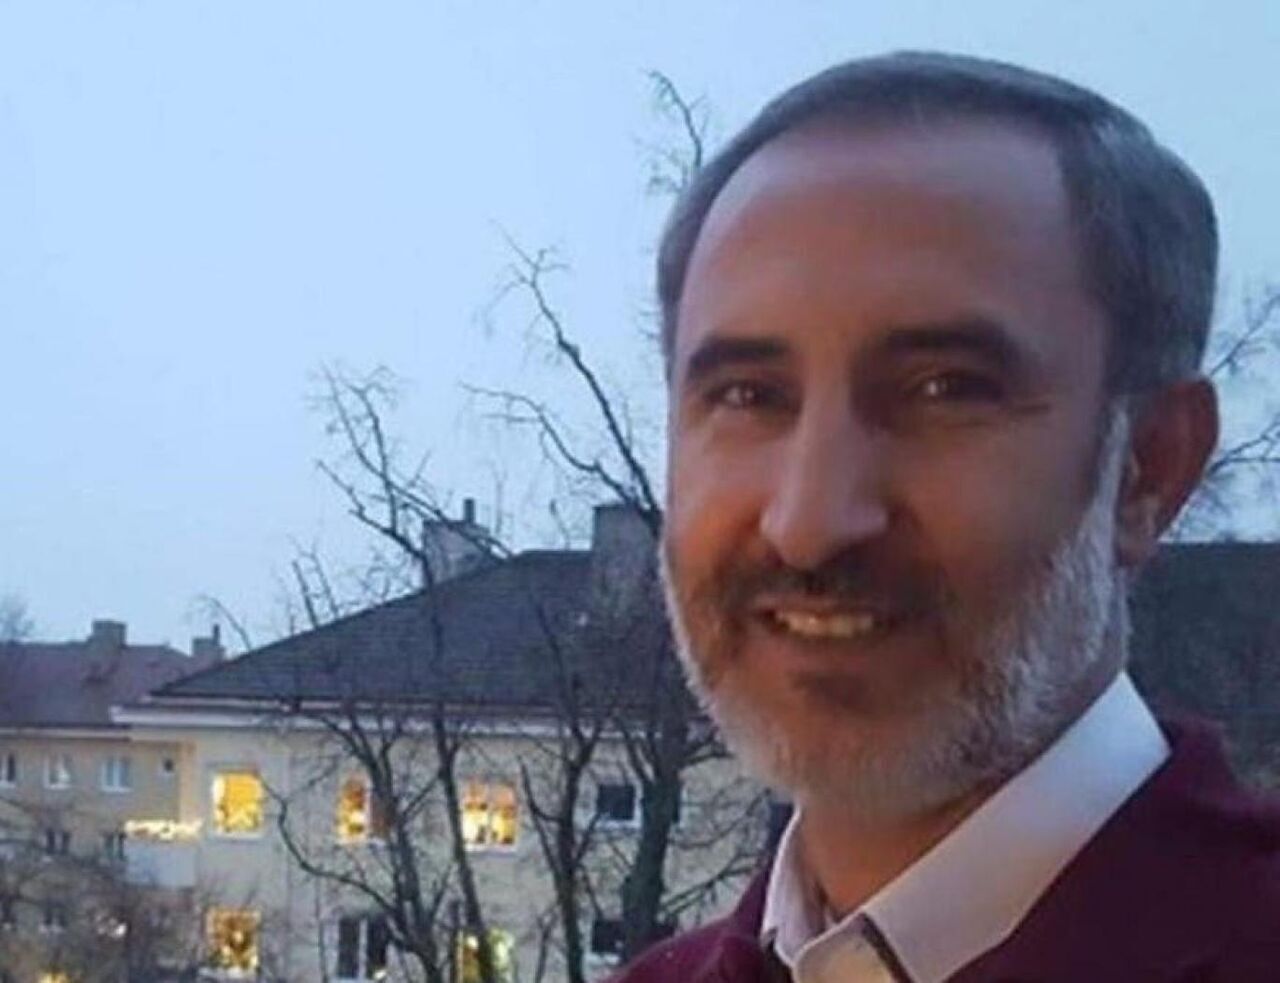 Шведский суд приговорил гражданина Ирана к пожизненному заключению